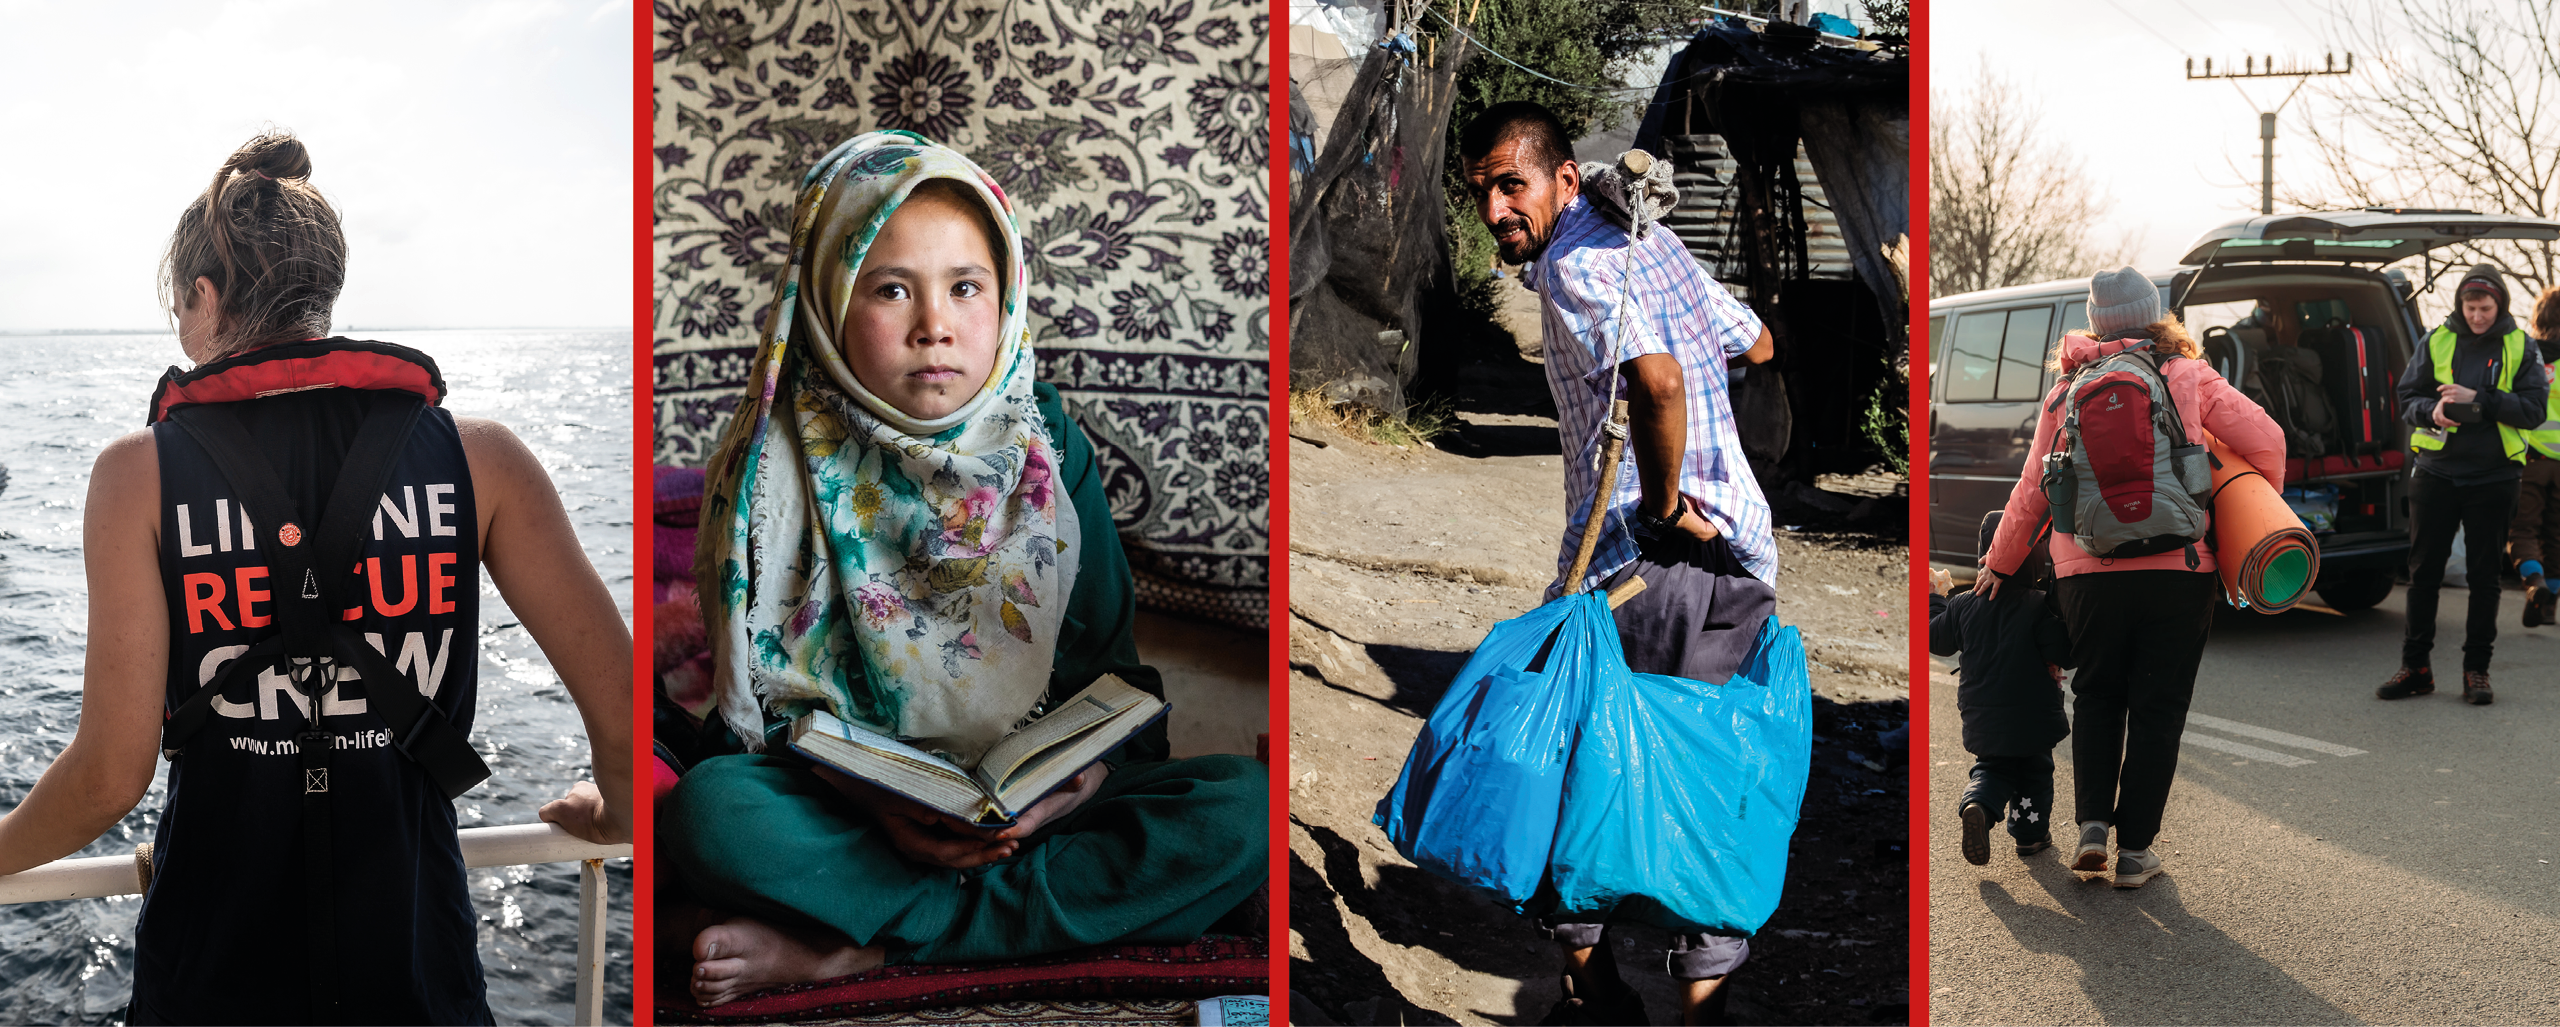 Bild 1: Seenotretterin auf der Rise Above, Bild 2: Mädchen mit Kopftuch in Afghanistan Bild 3: Mann beim tragen seine Habseligkeiten in Moria, Bild 4: Evakuierung durch Mission Lifeline Mitarbeiter:innen an der Ukrainischen Grenze  